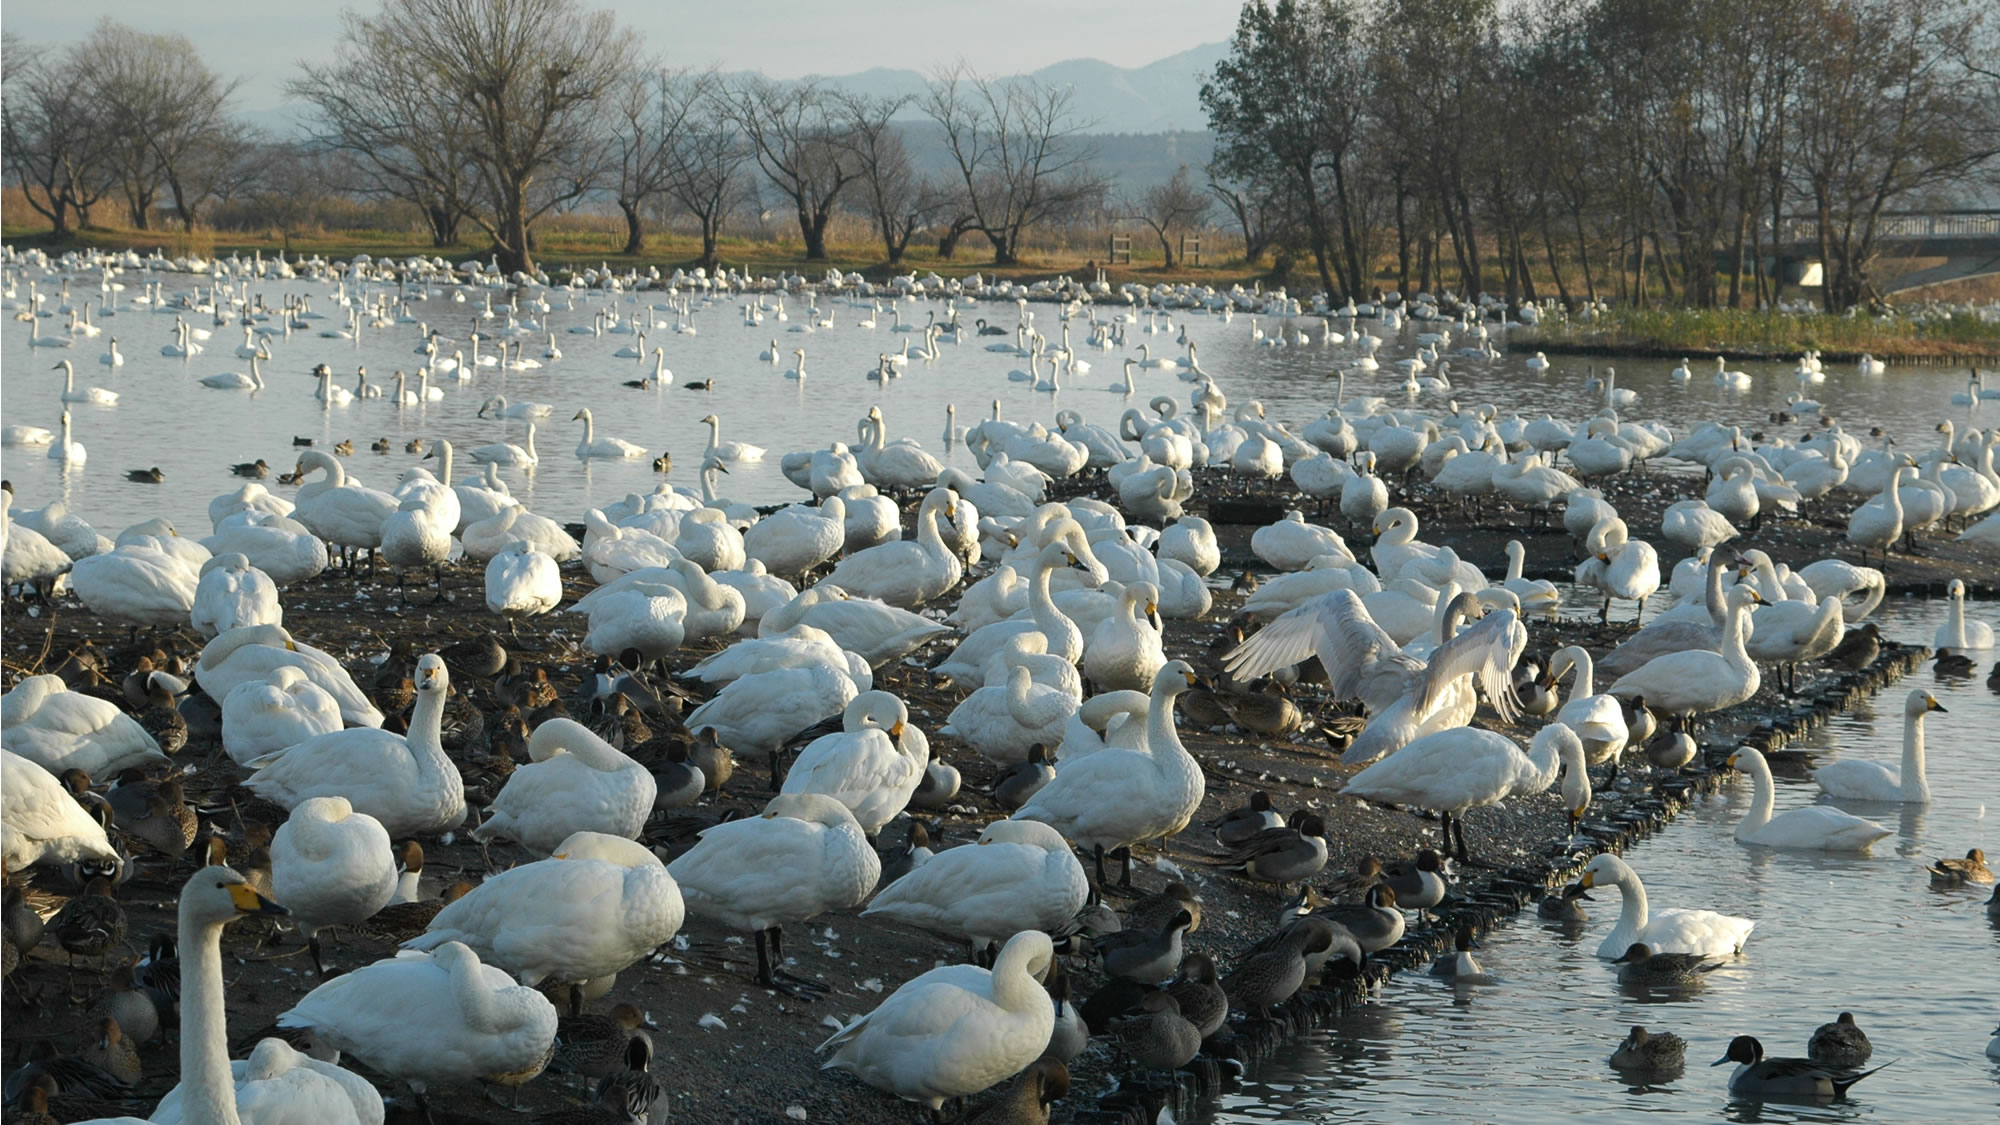 【瓢湖 白鳥】瓢湖には毎冬6,000羽以上もの白鳥が飛来します。